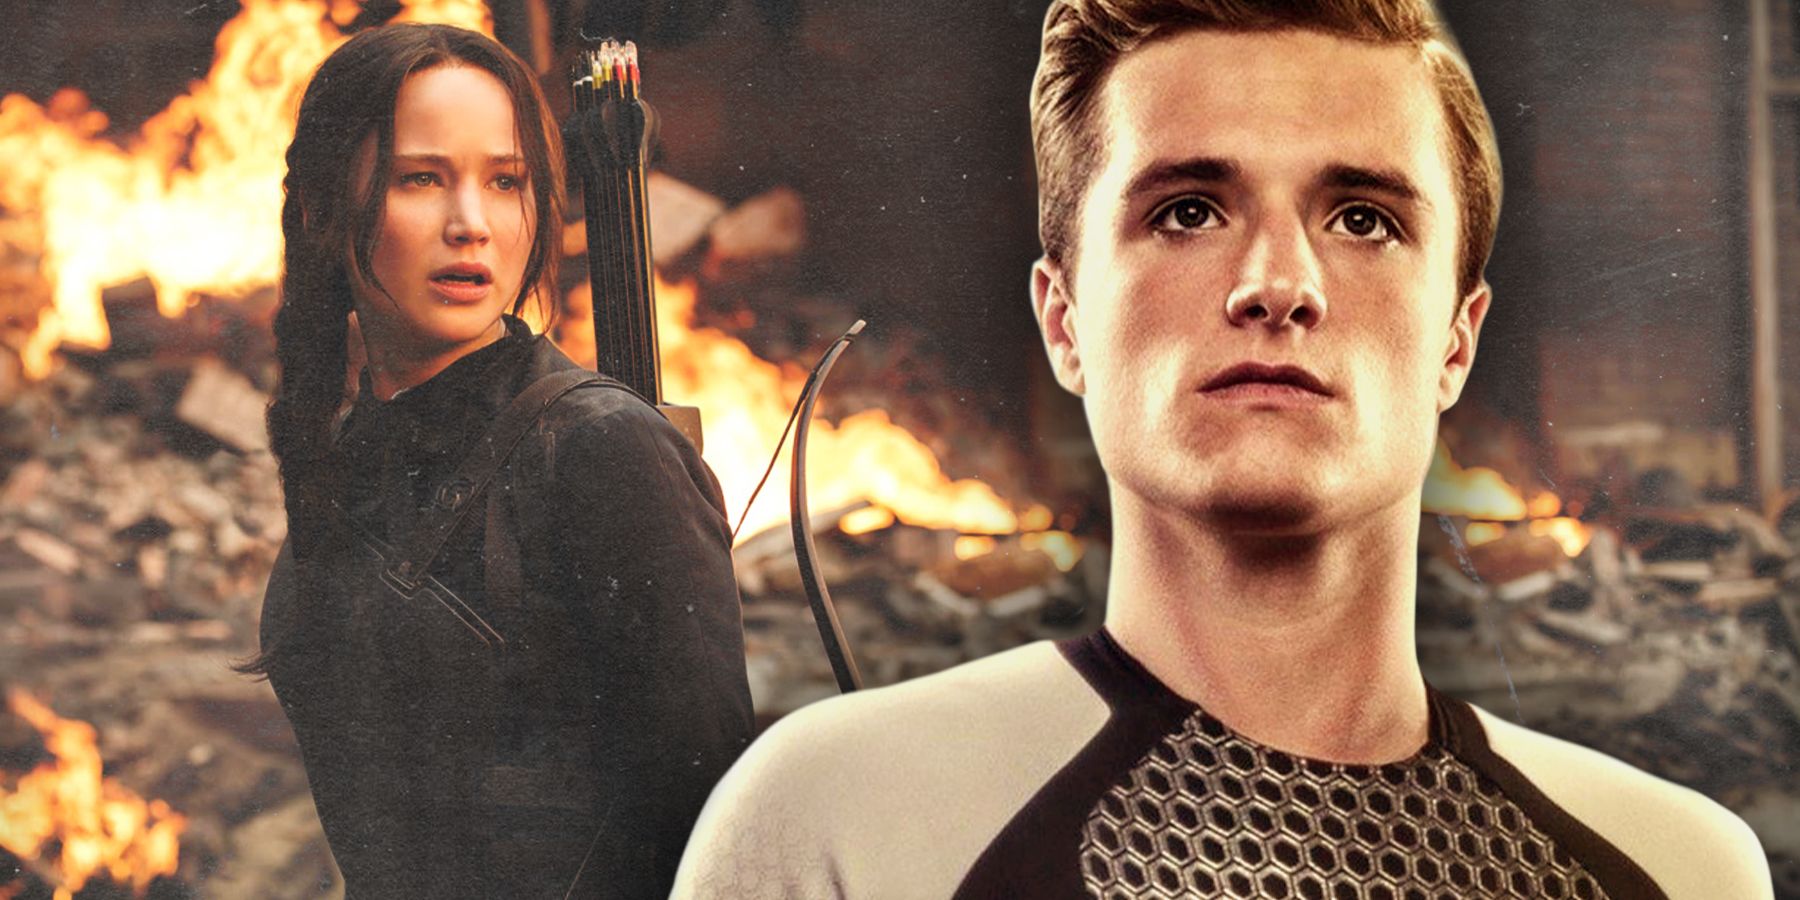 The Hunger Games' Katniss Everdeen and Peeta Mellark